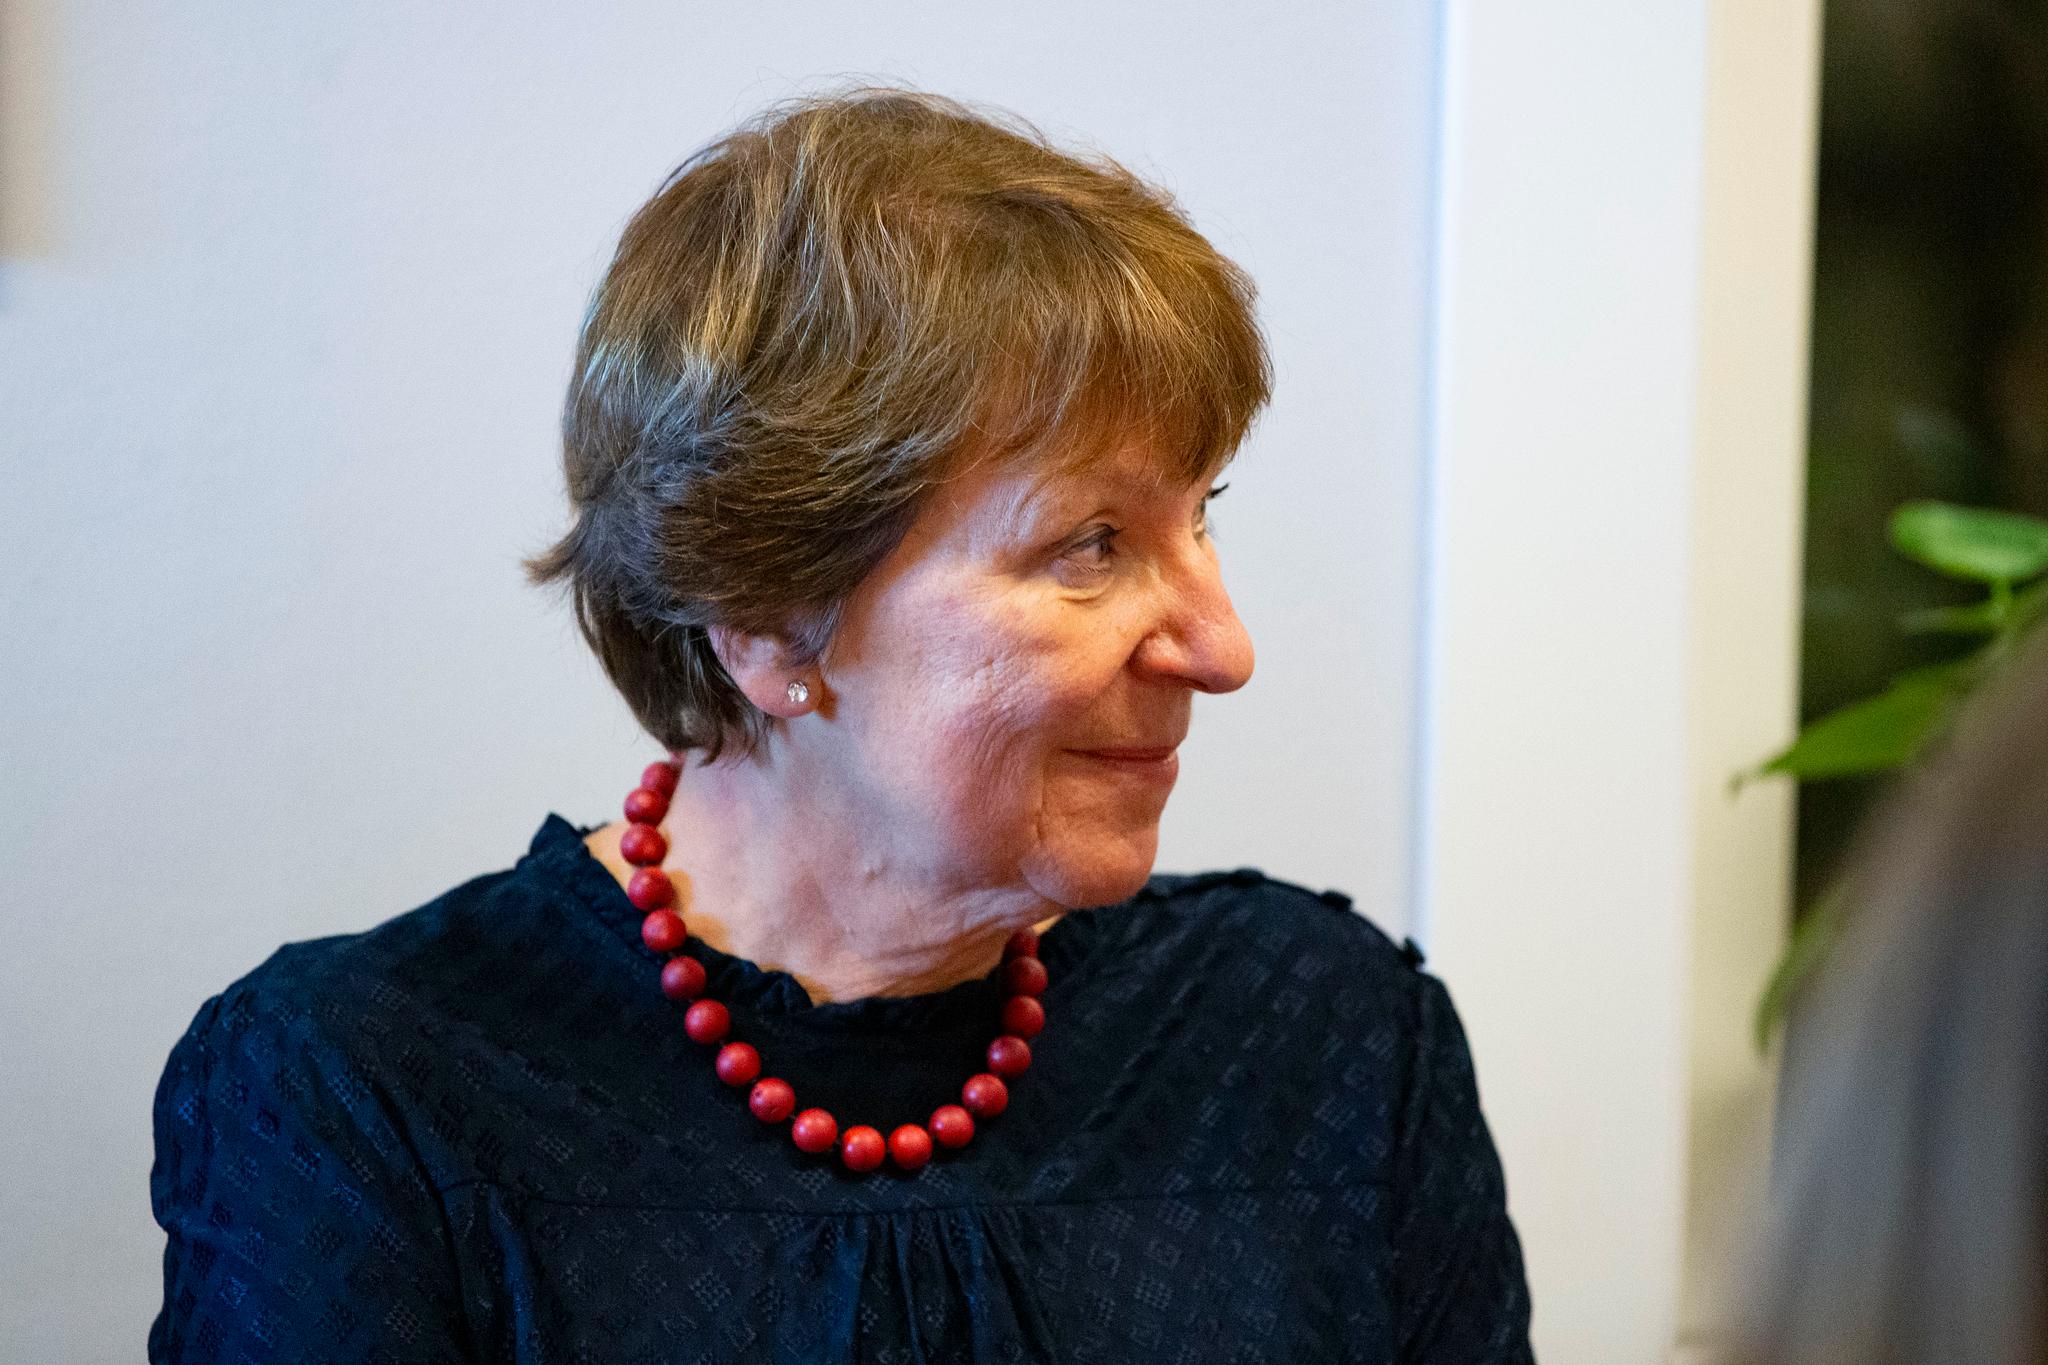 – Veldig hyggelig og veldig fortjent, sier Oslo-ordfører Marianne Borgen om at David Adampour er Årets osloborger.